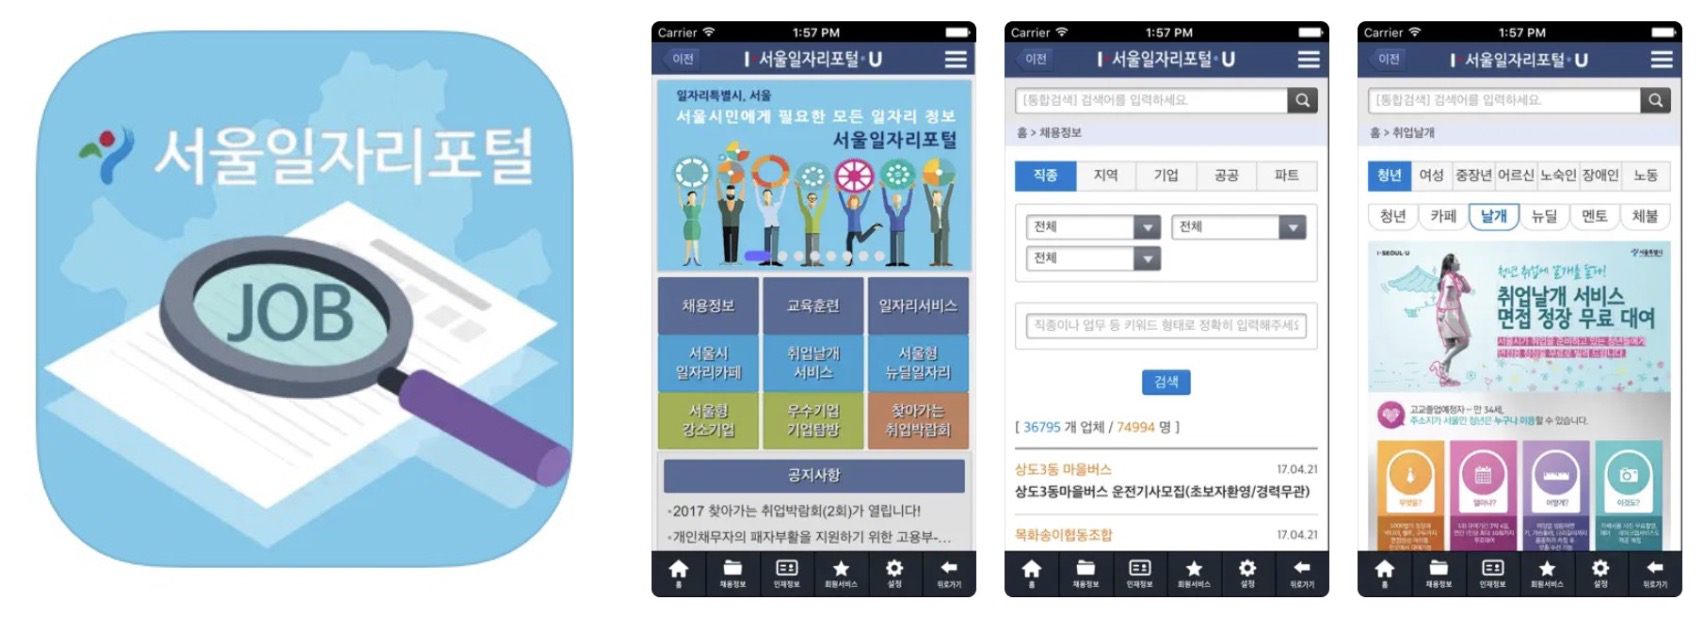 서울일자리포털 앱 어플